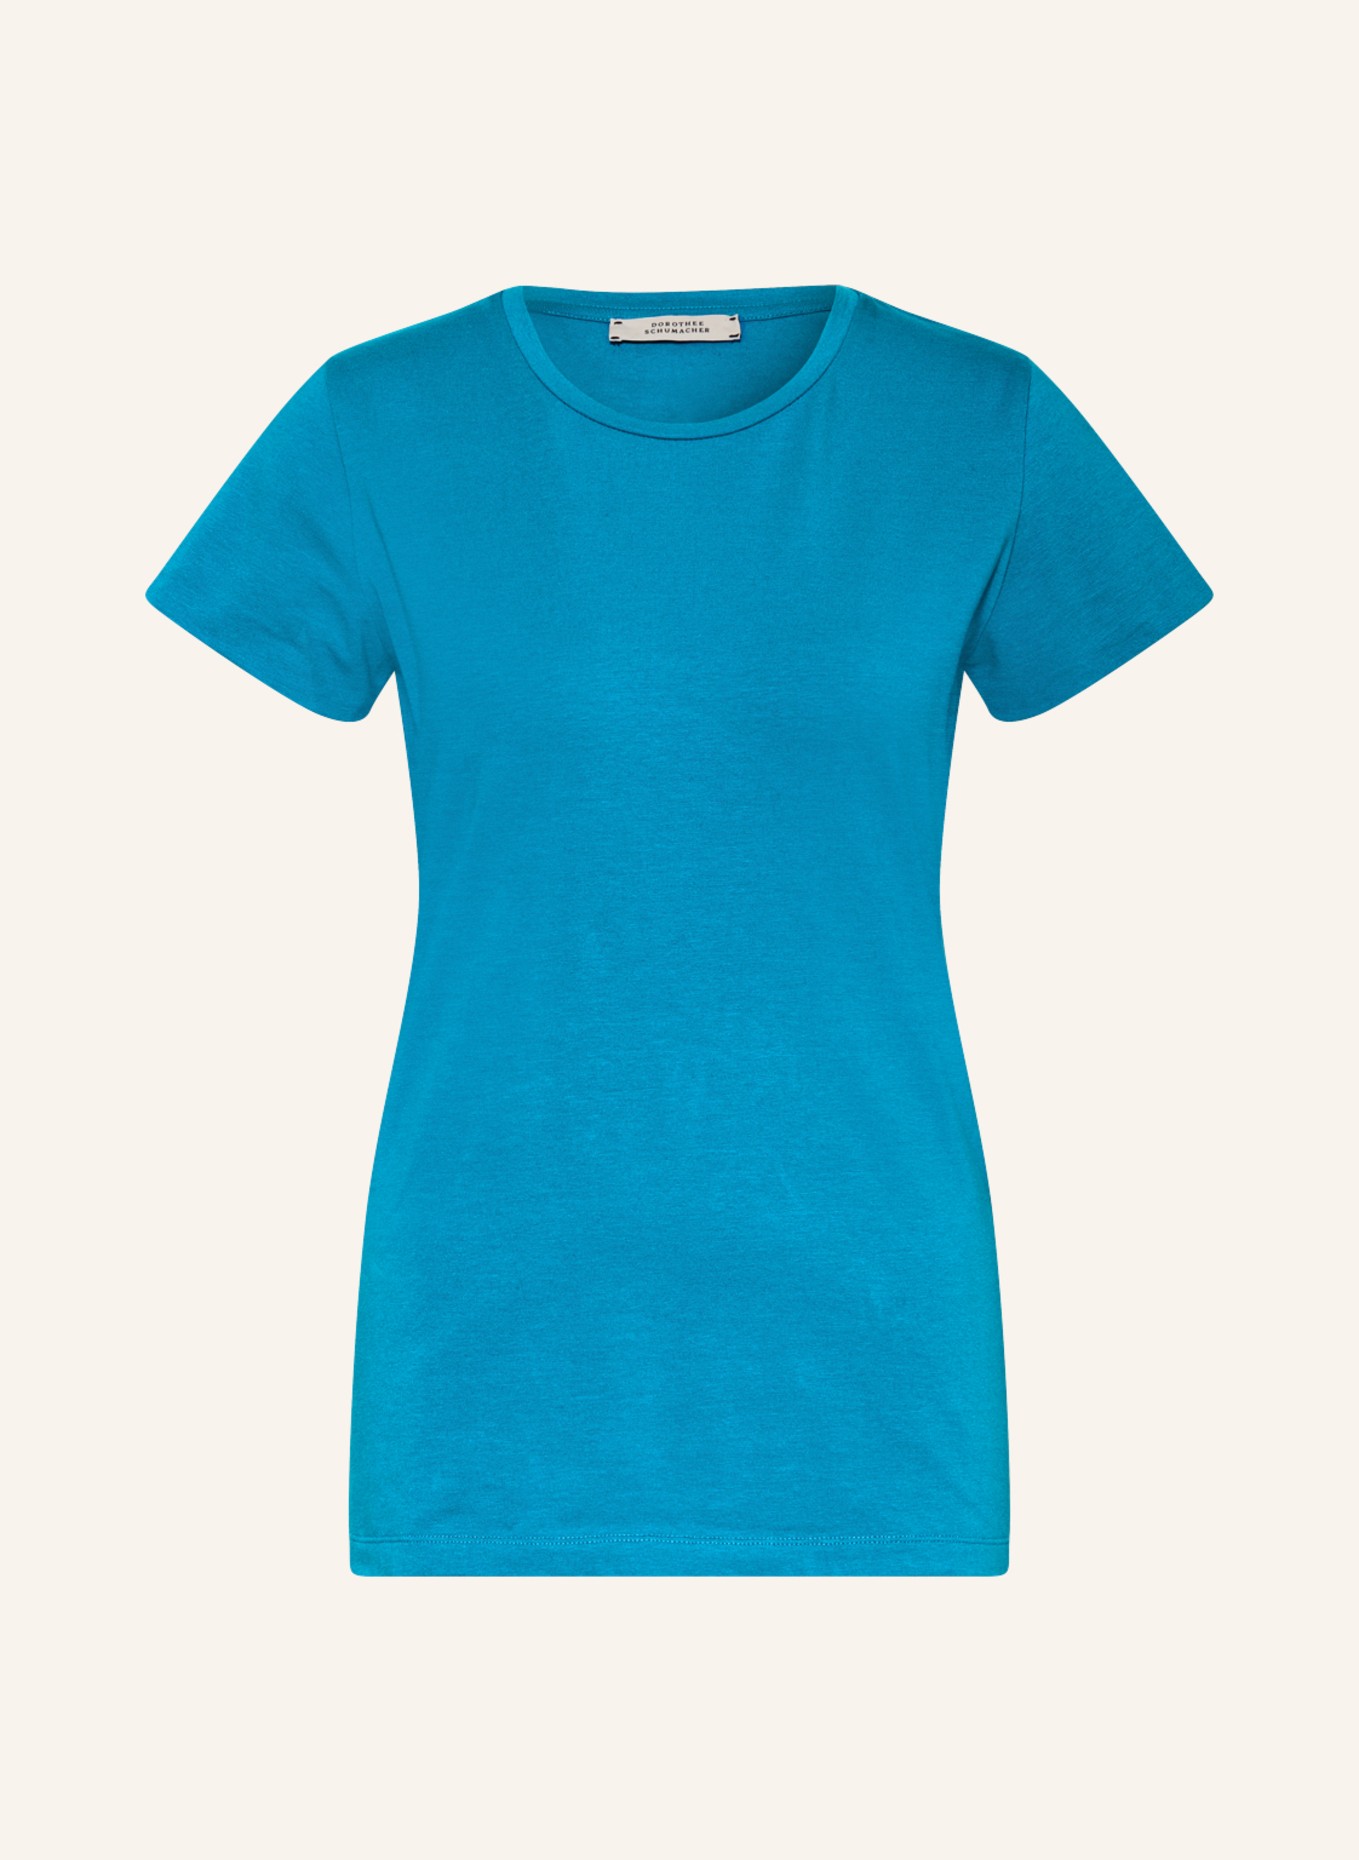 DOROTHEE SCHUMACHER T-Shirt, Farbe: TÜRKIS (Bild 1)